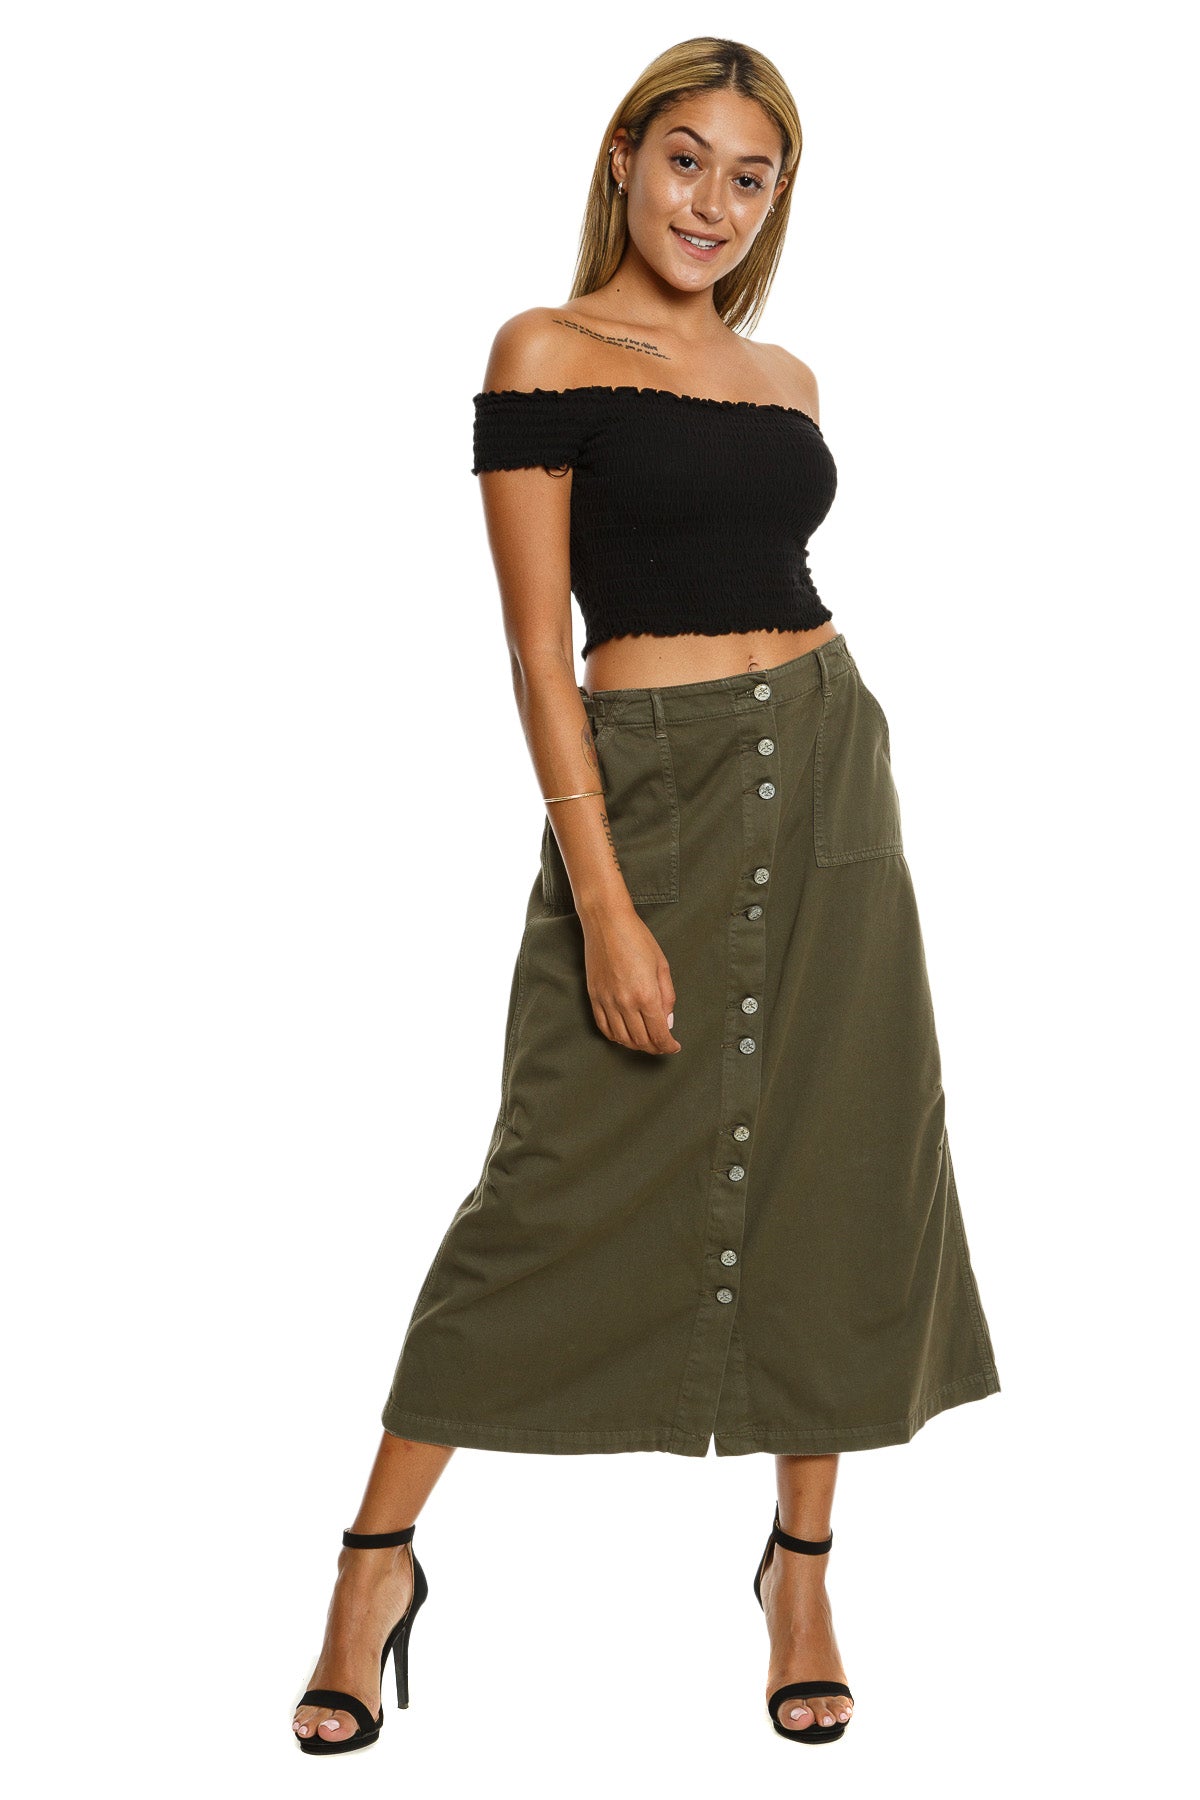 Long skirt in Olive